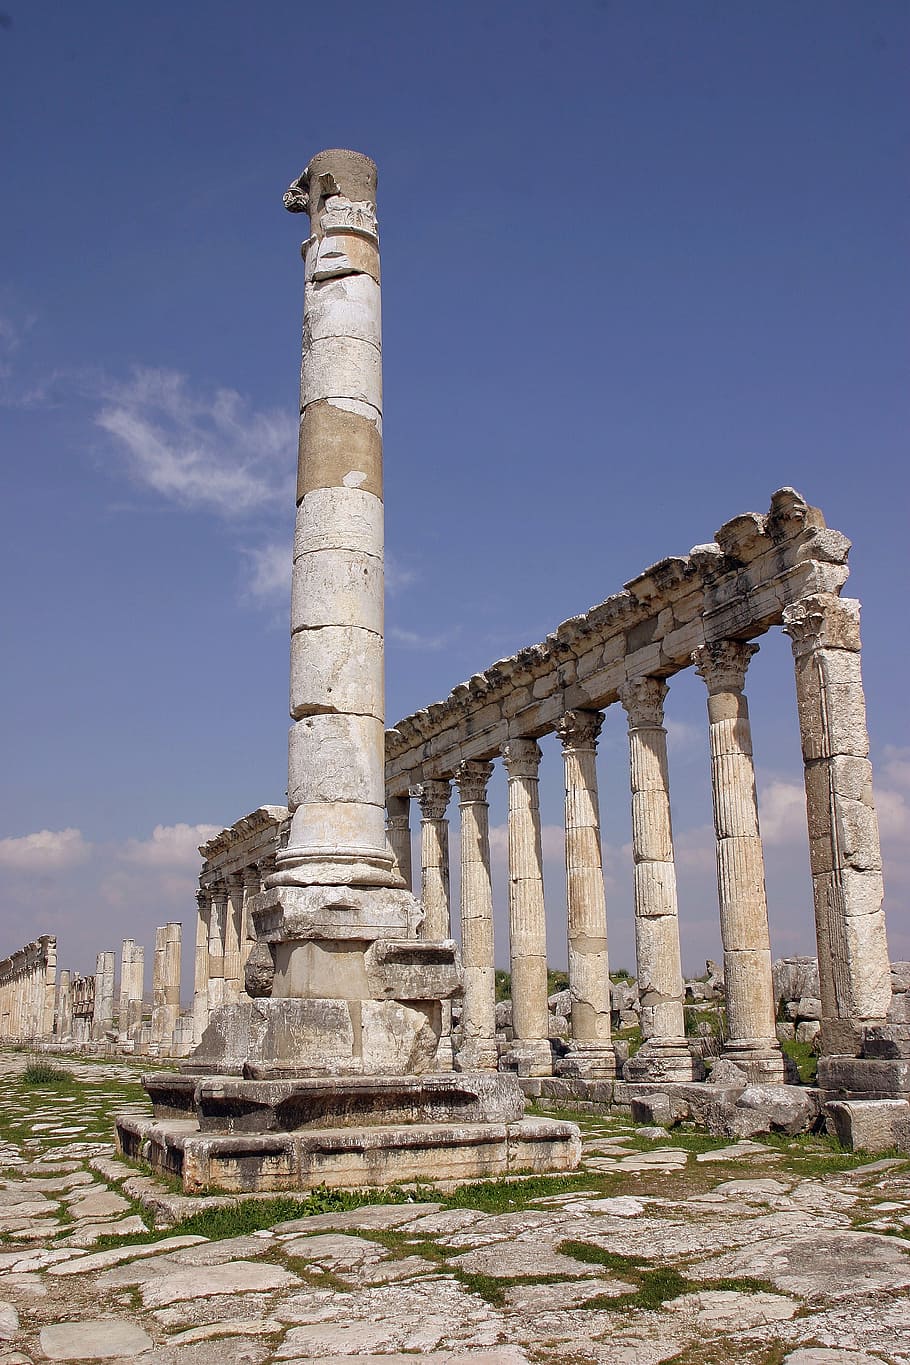 aphamia, byzantisch, siria, ciudades antiguas, historia, pasado, antiguo, arquitectura, columna arquitectónica, cielo